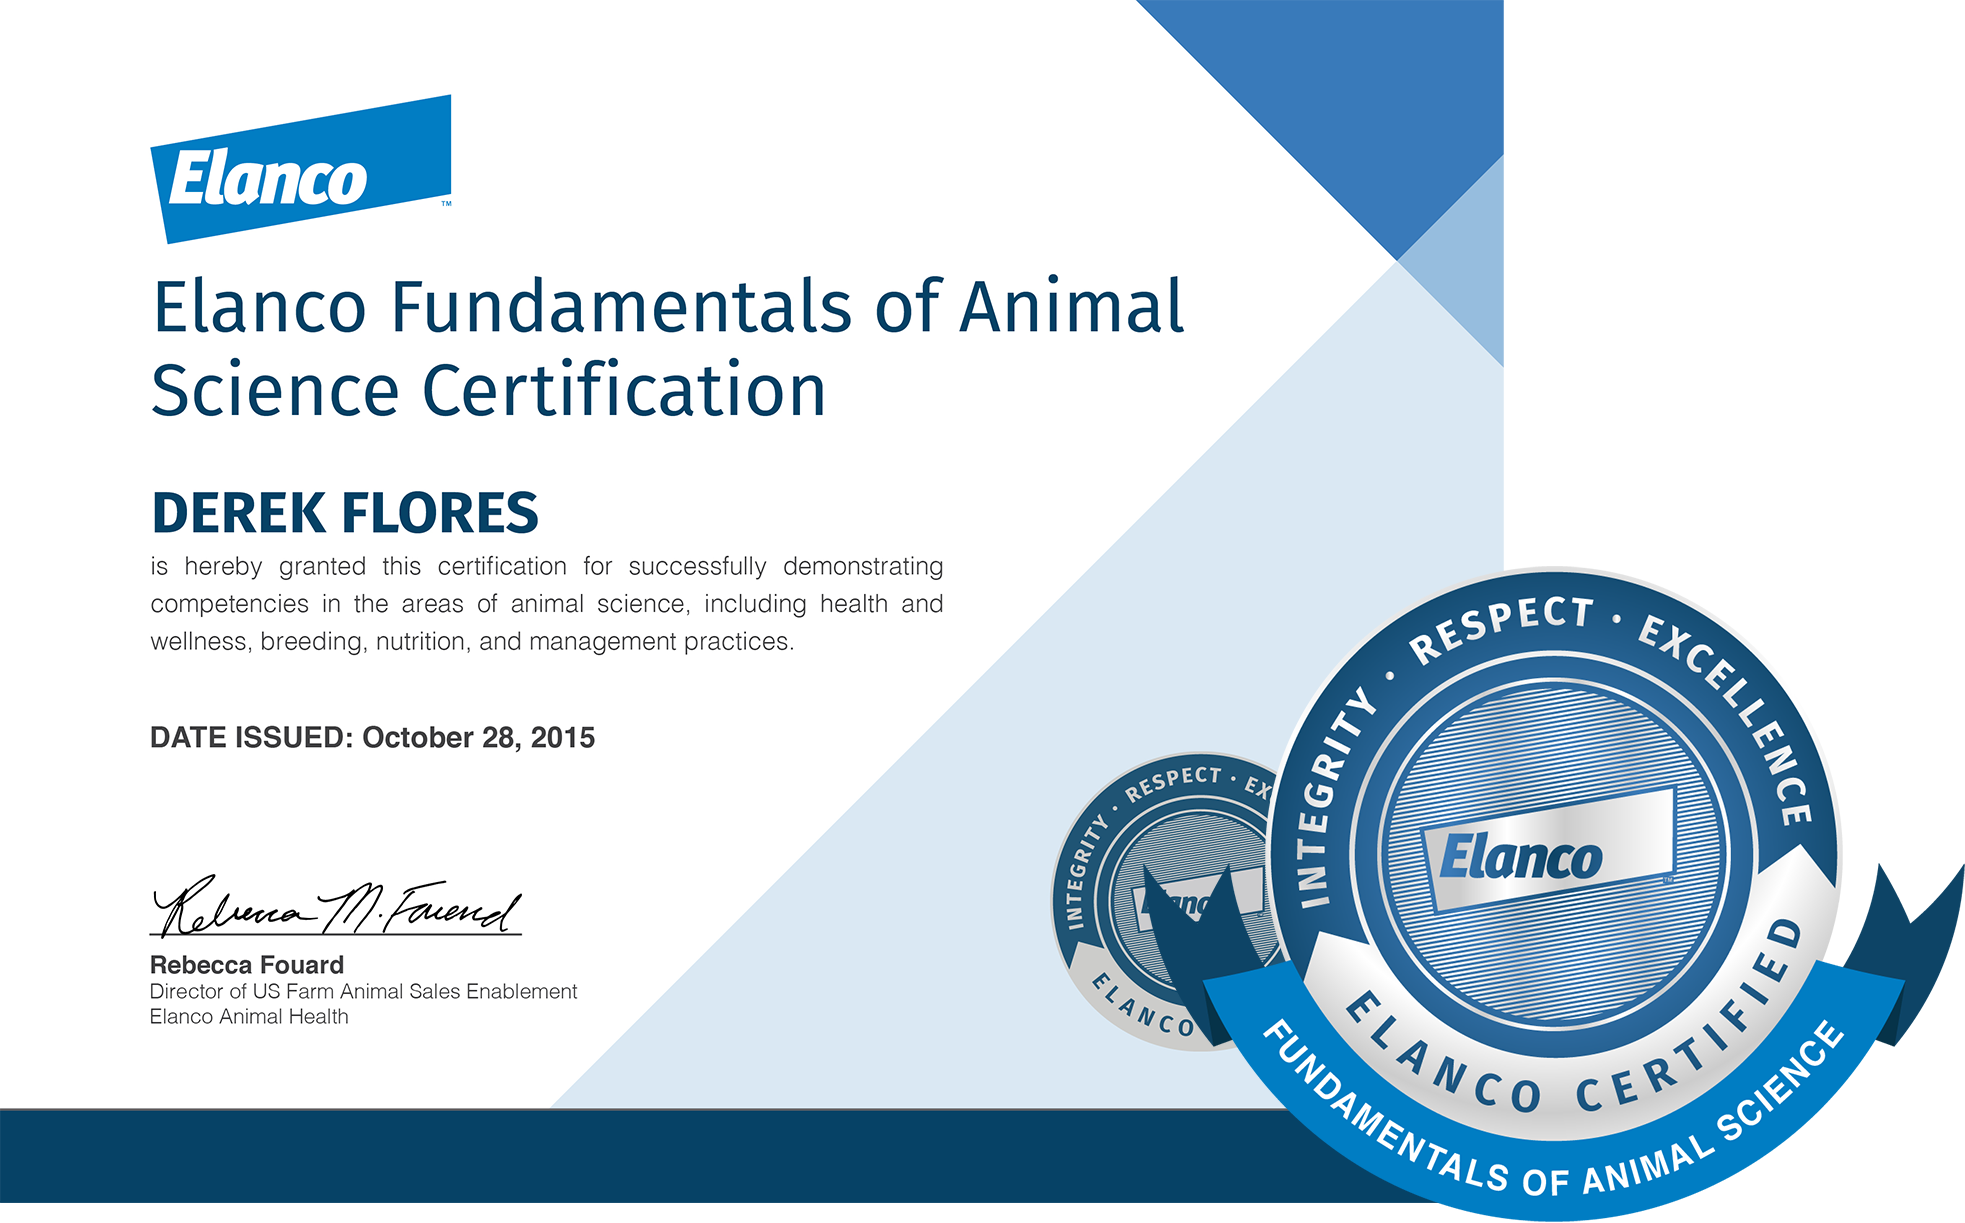 Elanco Fundamentals of Animal Science Certification